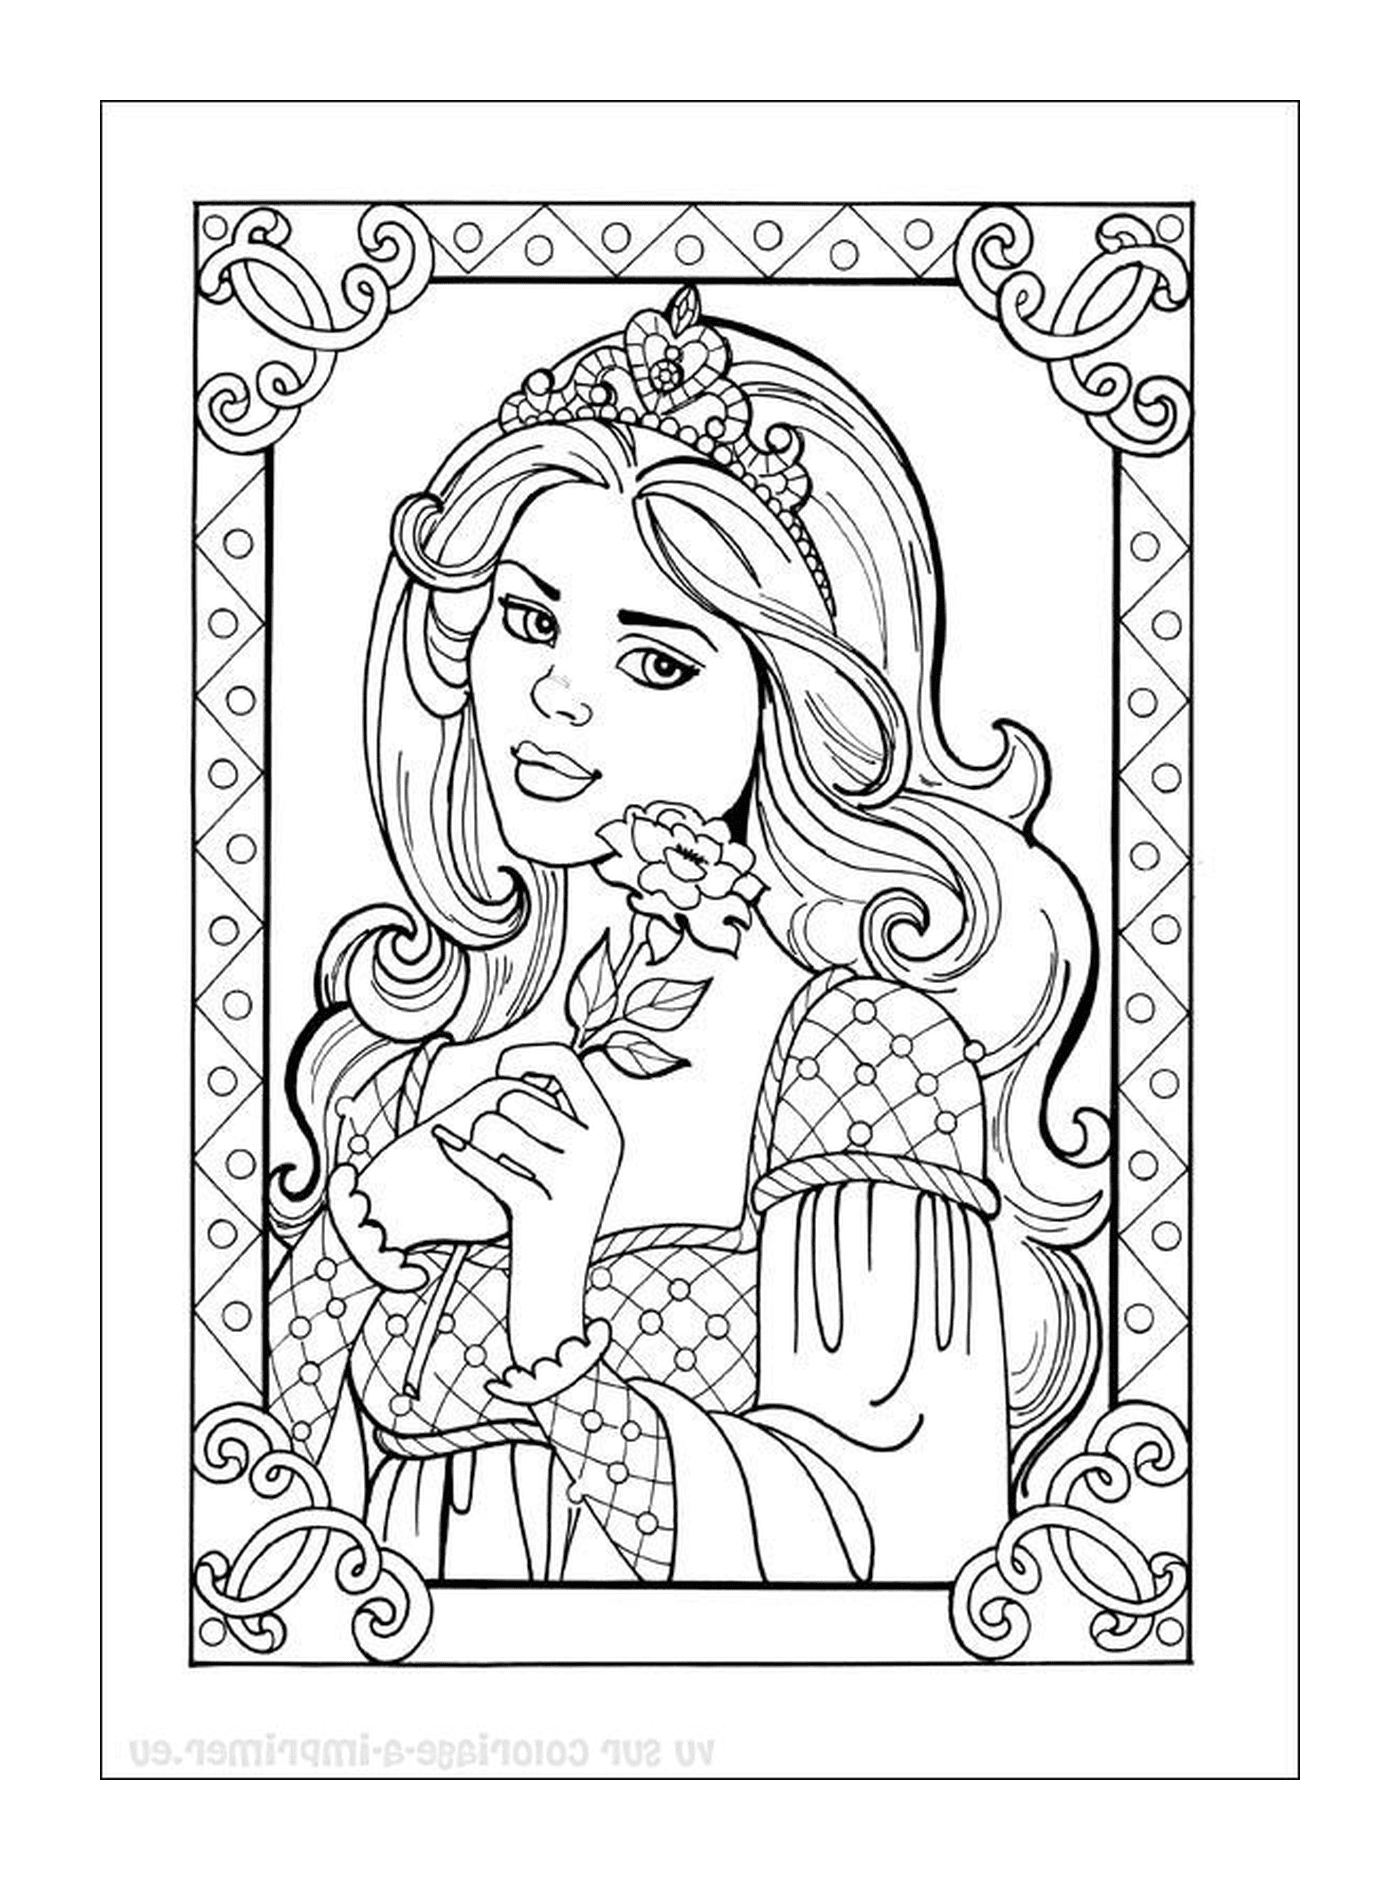  Disney Princess, a princess holding a rose 